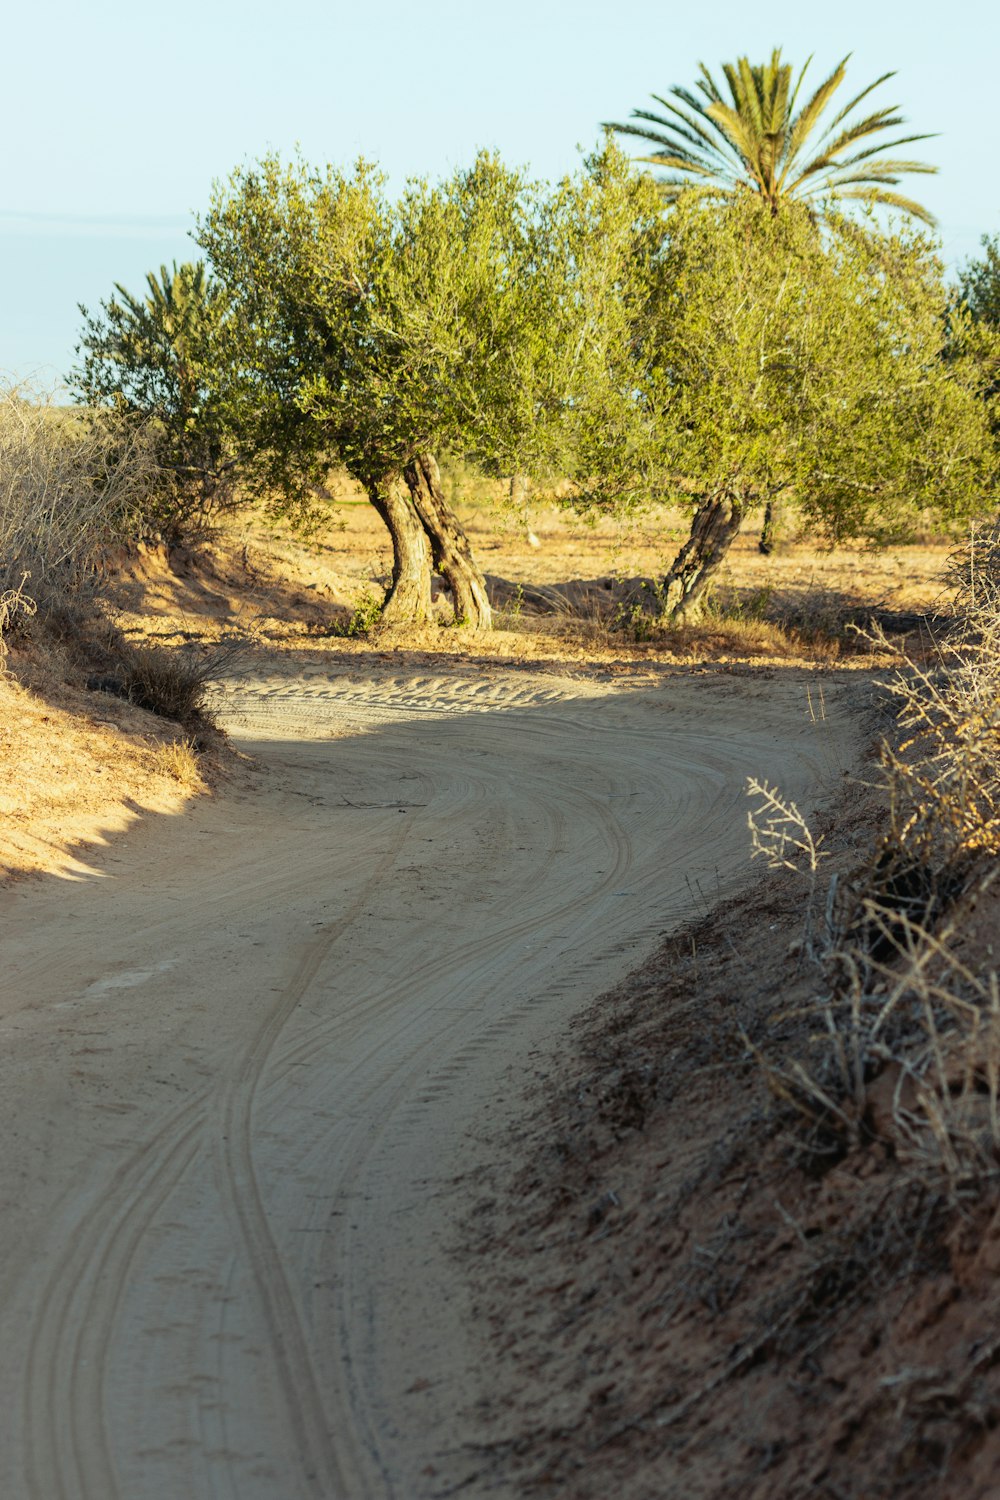 Una cebra cruzando un camino de tierra frente a los árboles